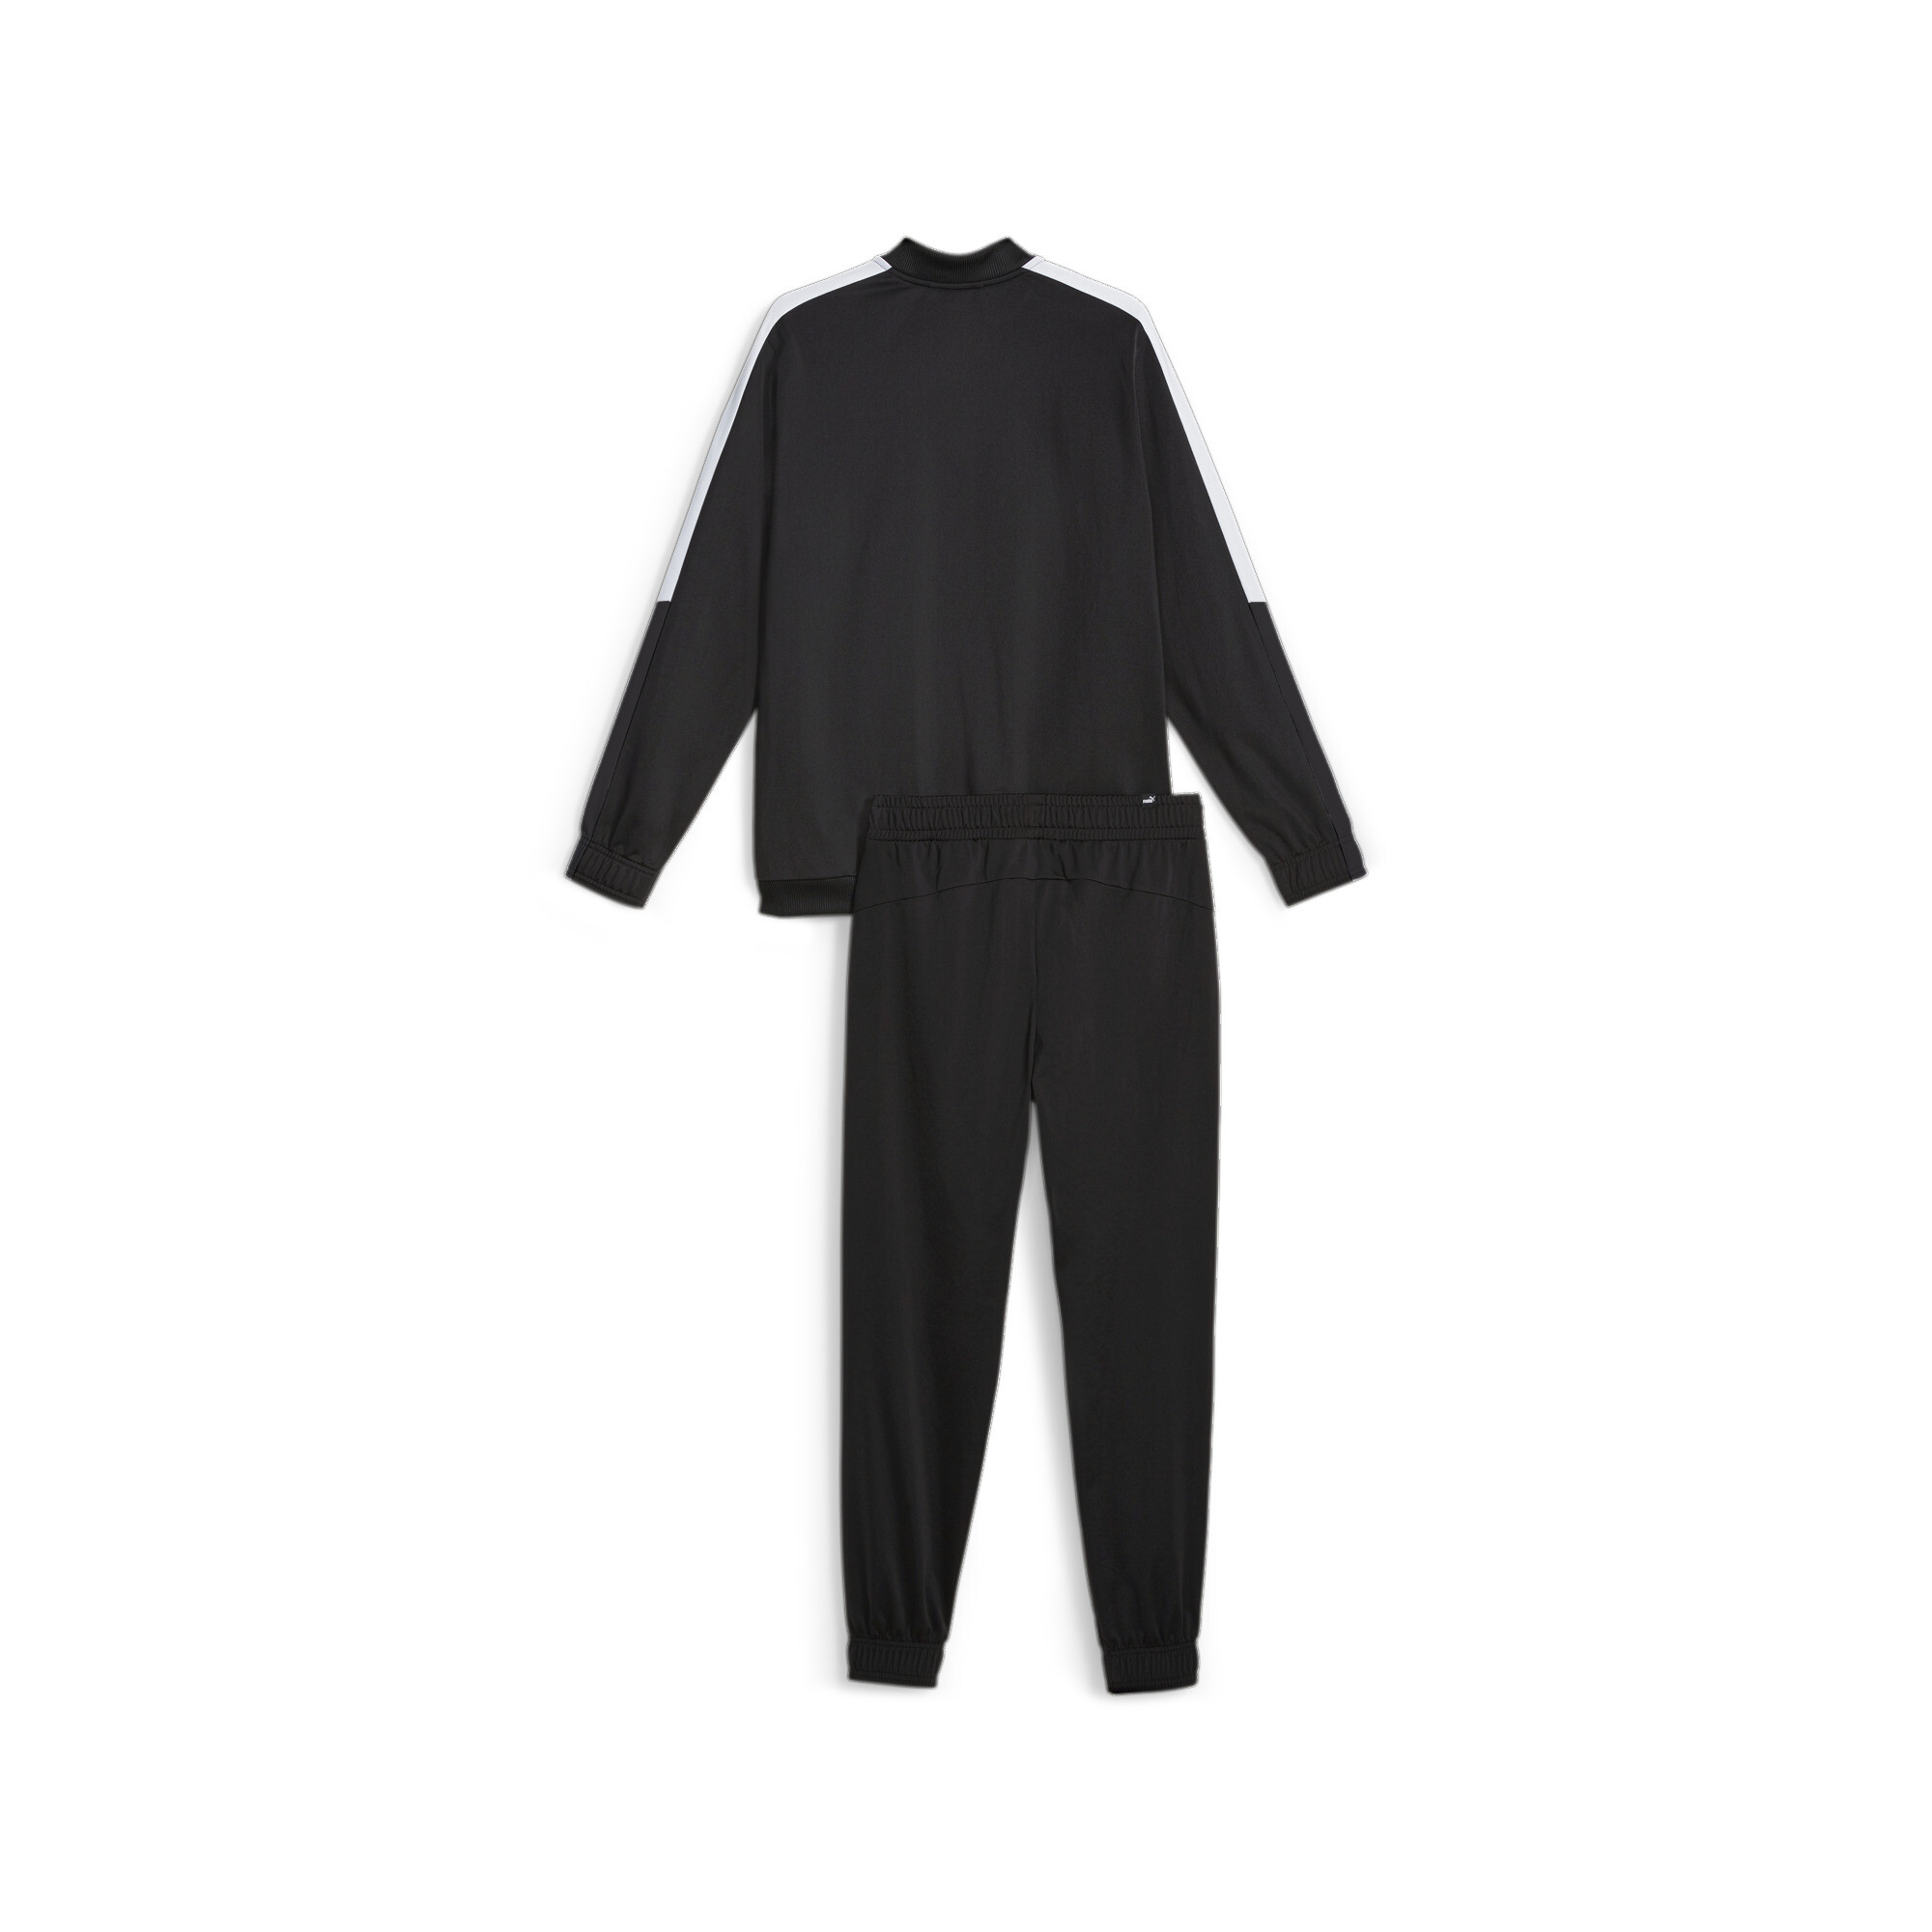 Men's Puma Men's Baseball Tricot Suit, Black, Size S, Clothing